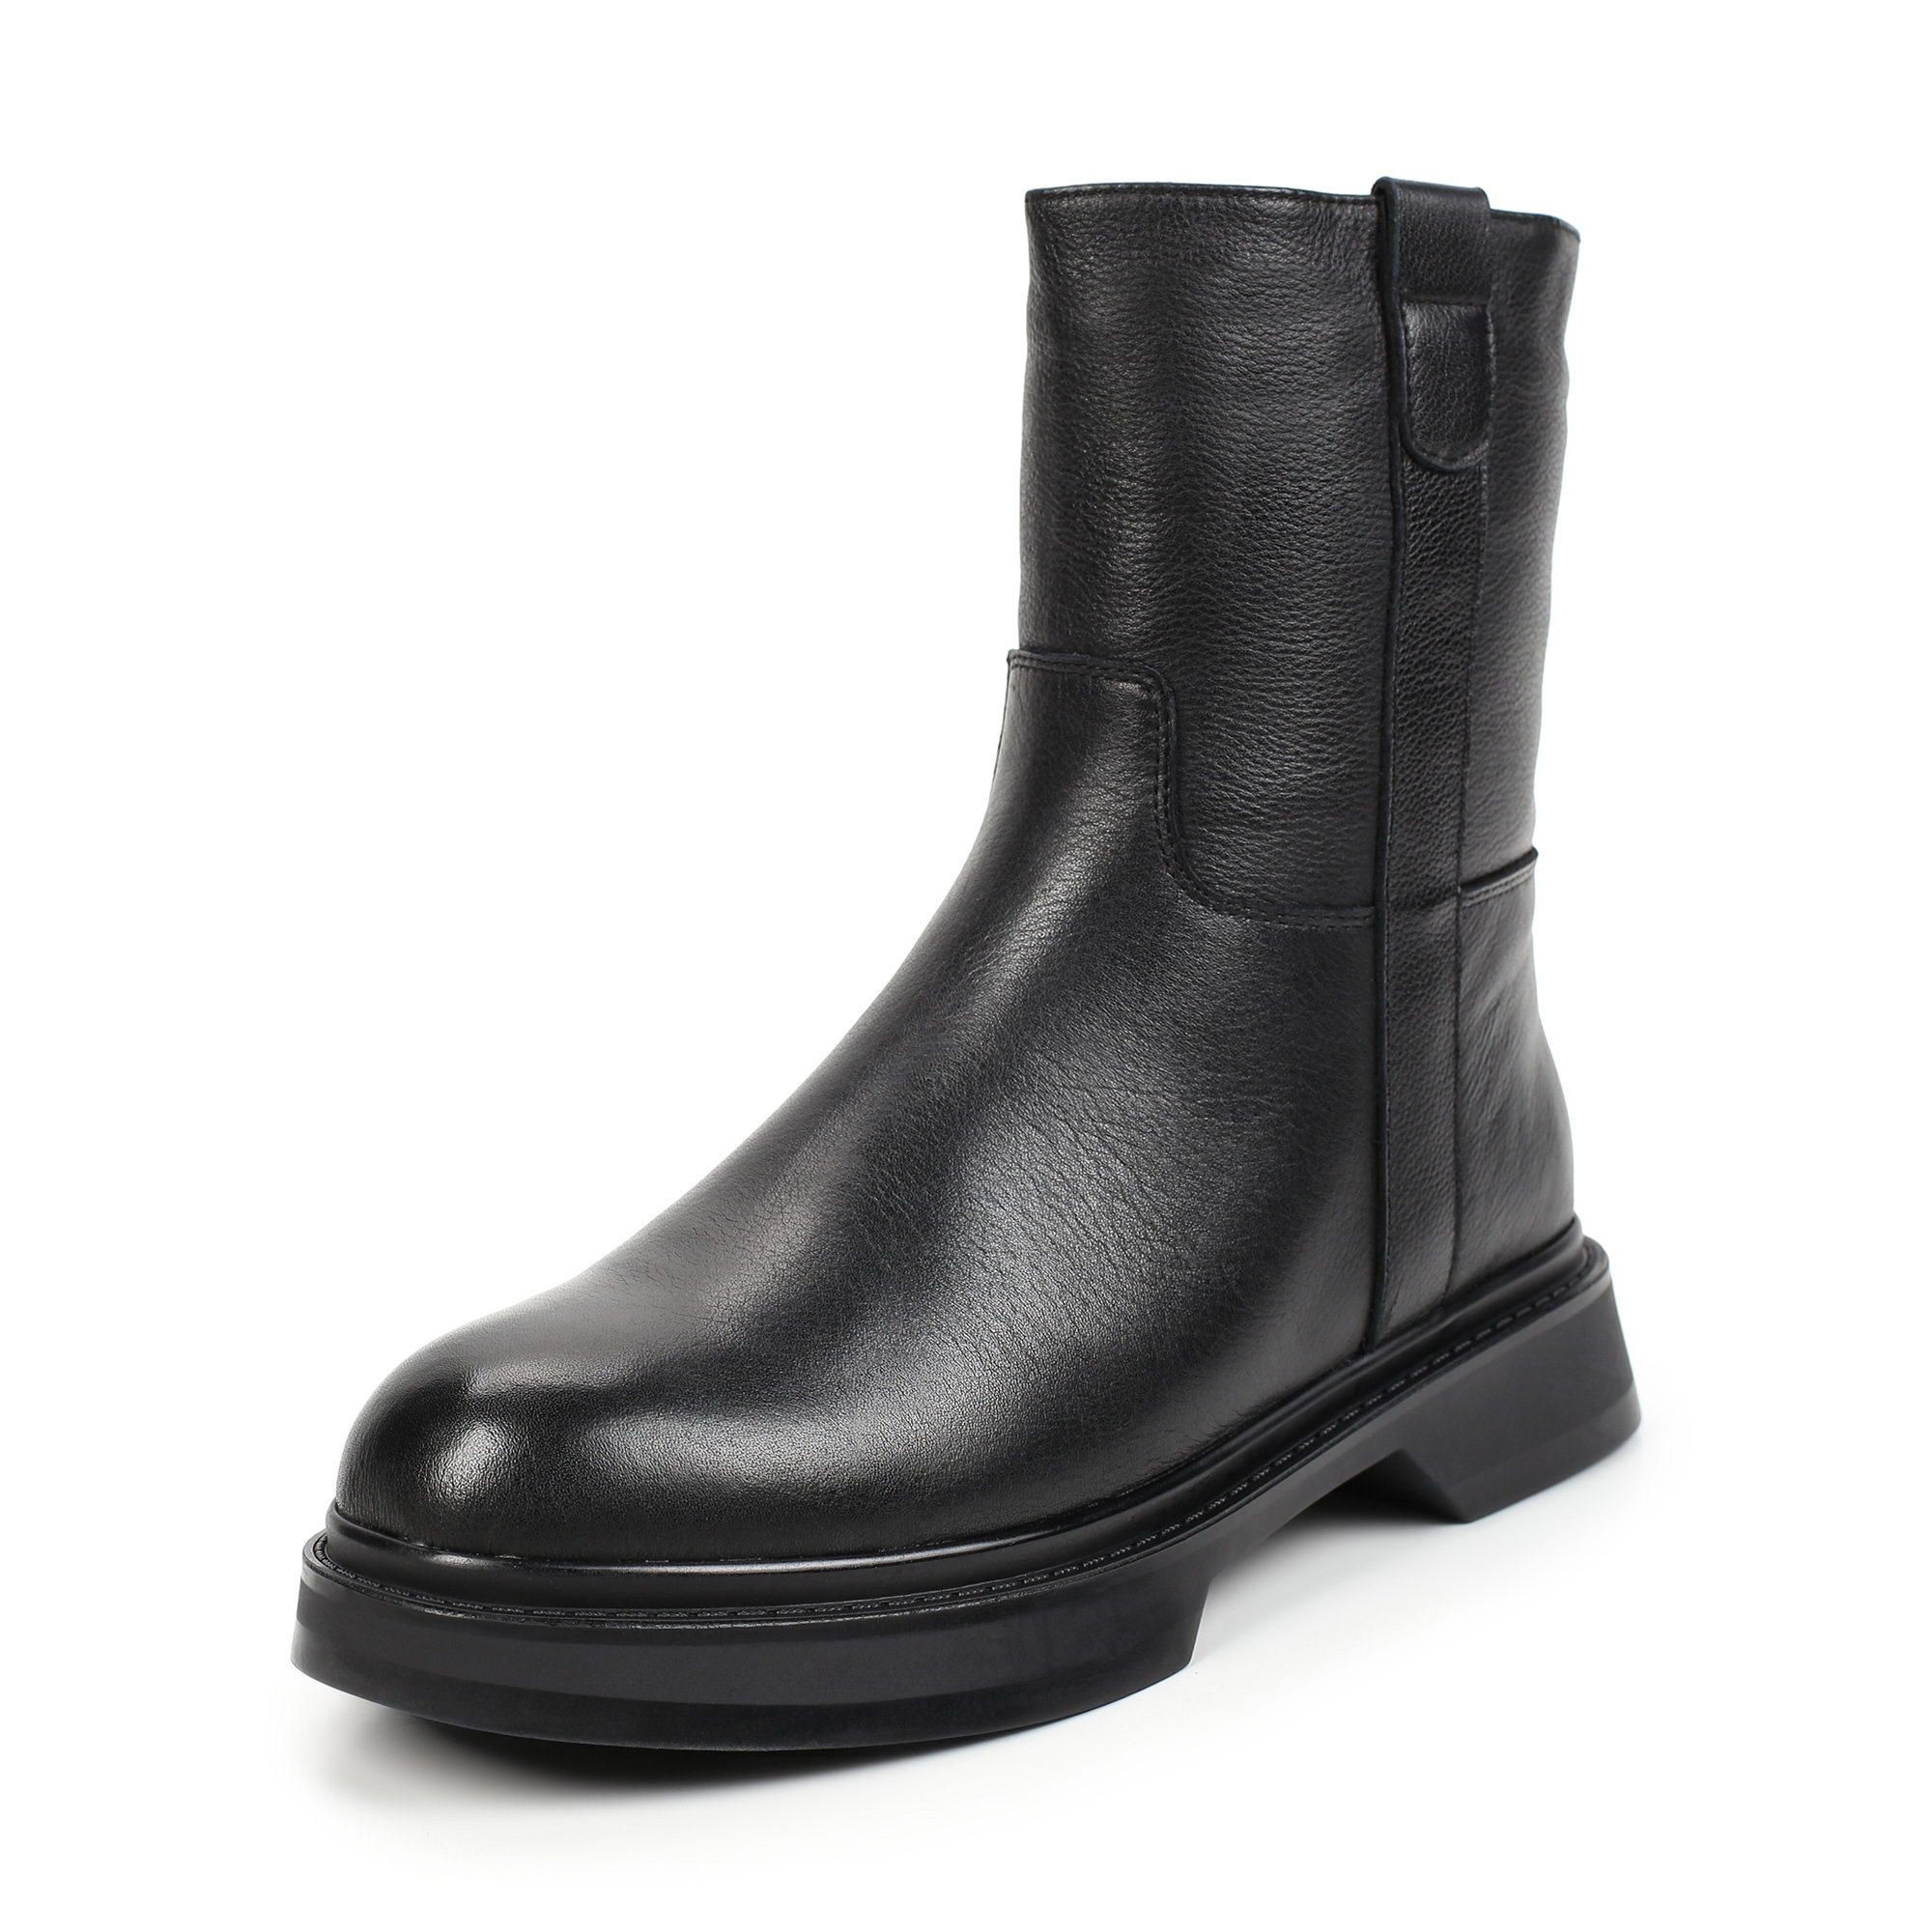 Ботинки Thomas Munz 021-350A-5102, цвет черный, размер 37 - фото 2